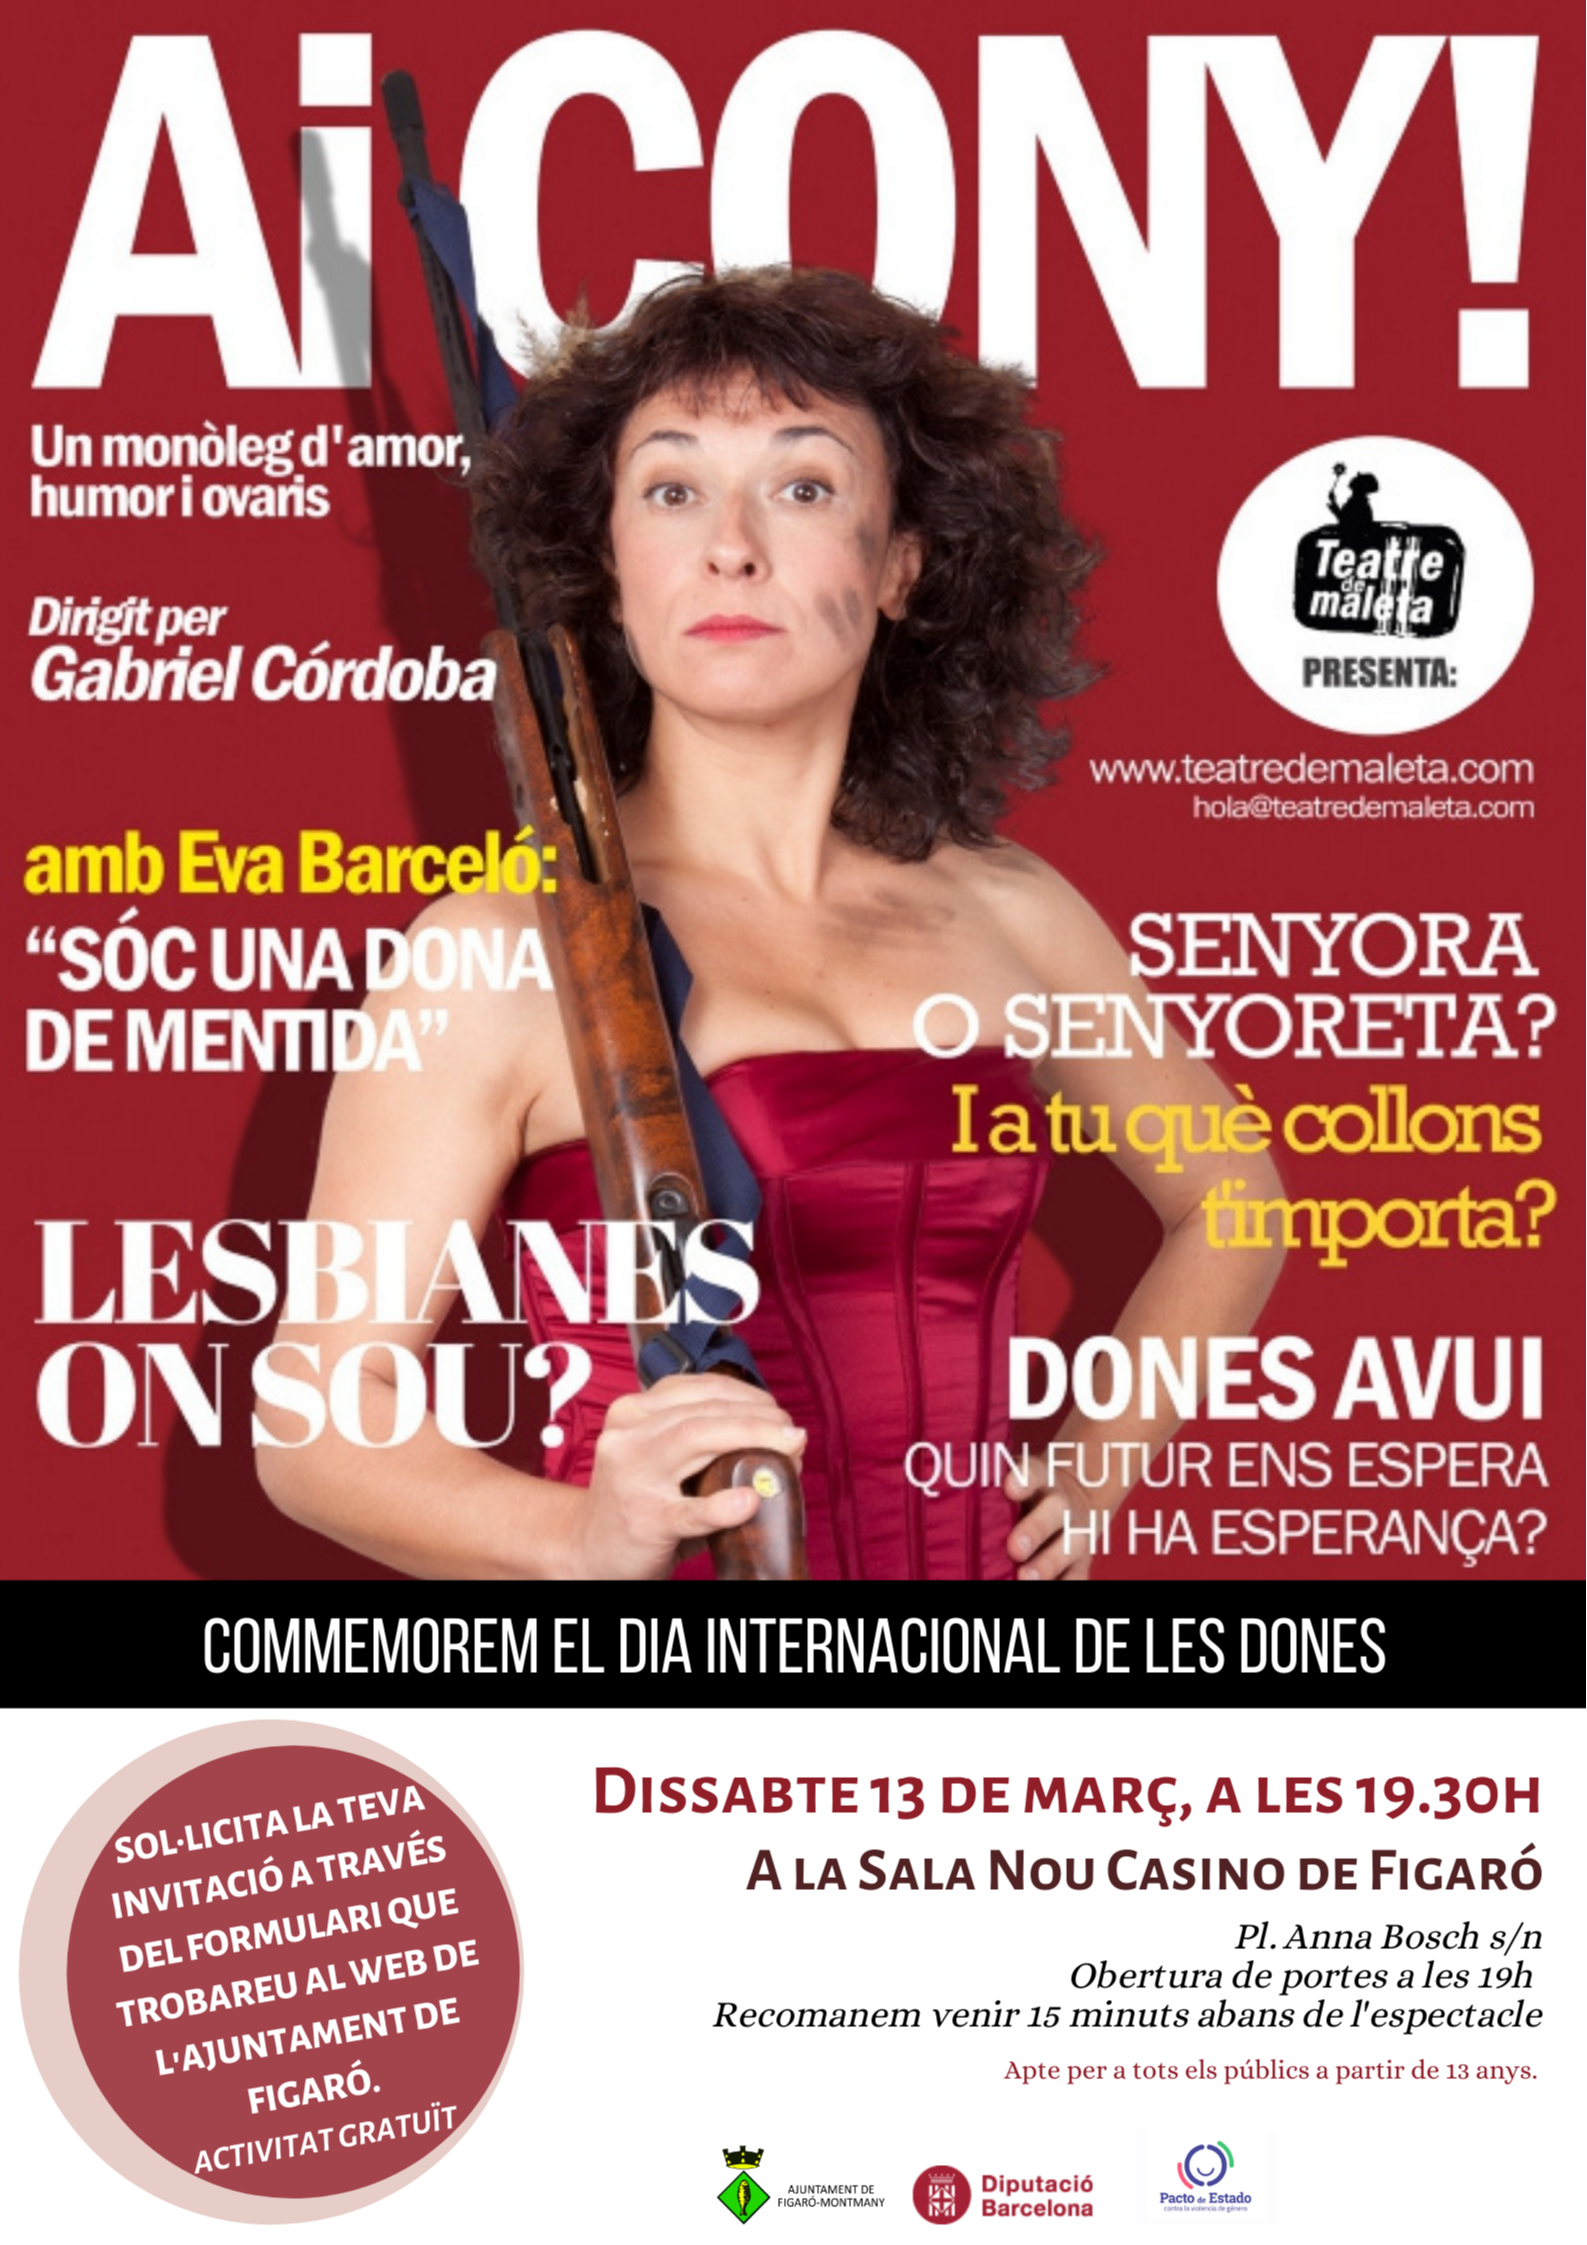 L'actriu Eva Barceló actuarà a Figaró amb el monòleg Ai Cony!, per commemorar el 8M